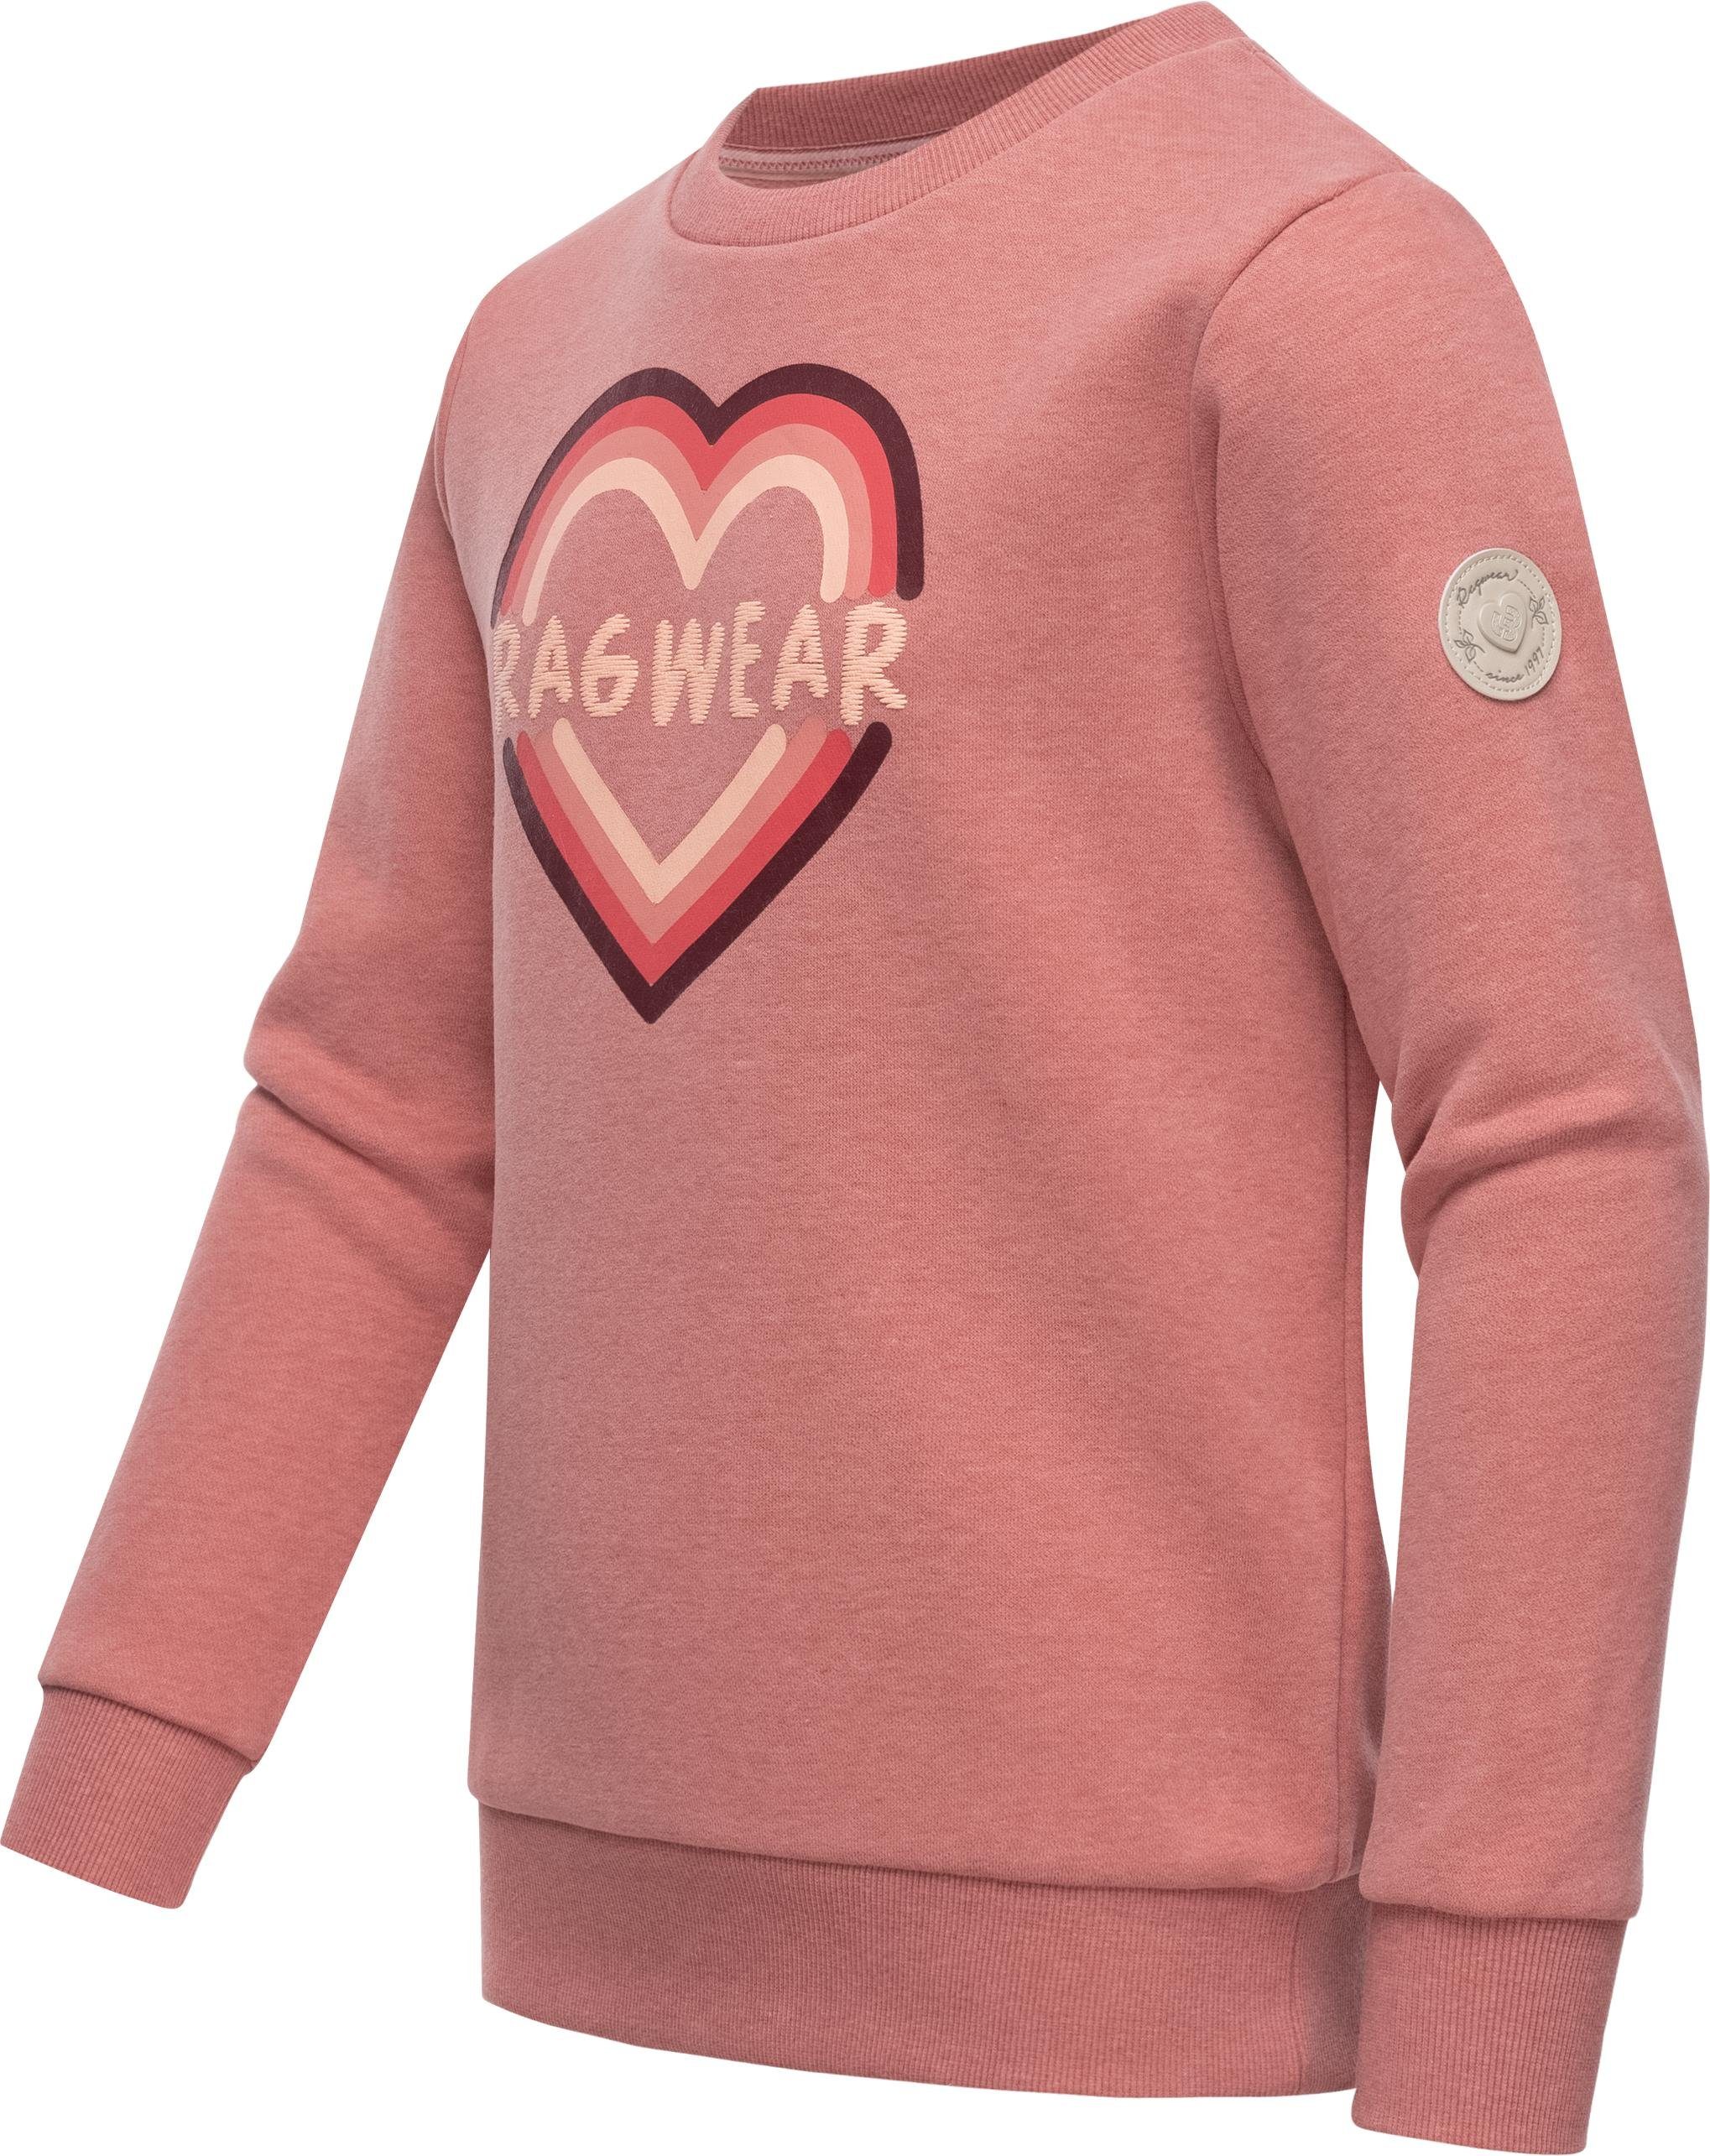 Ragwear Sweater Evka Print schmiegt angenehm Logo sich mit Print, perfekt stylisches Mädchen Sweatshirt Sehr an zu coolem tragen